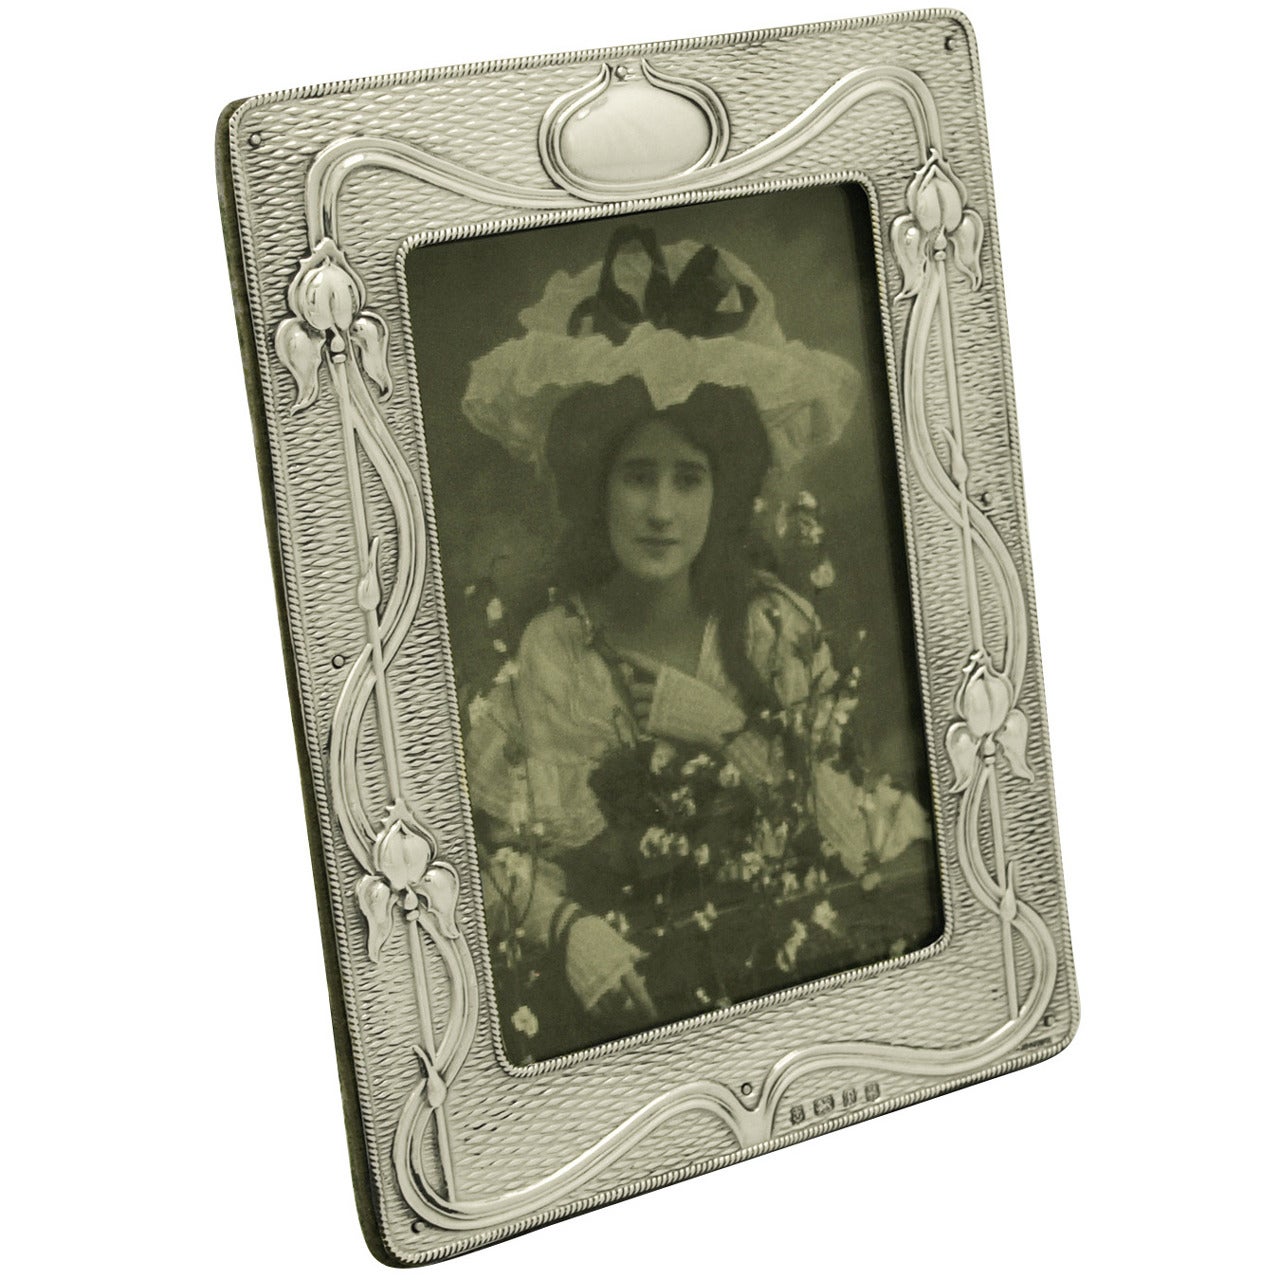 Antique Edwardian Sterling Silver Photograph Frame, Art Nouveau Style